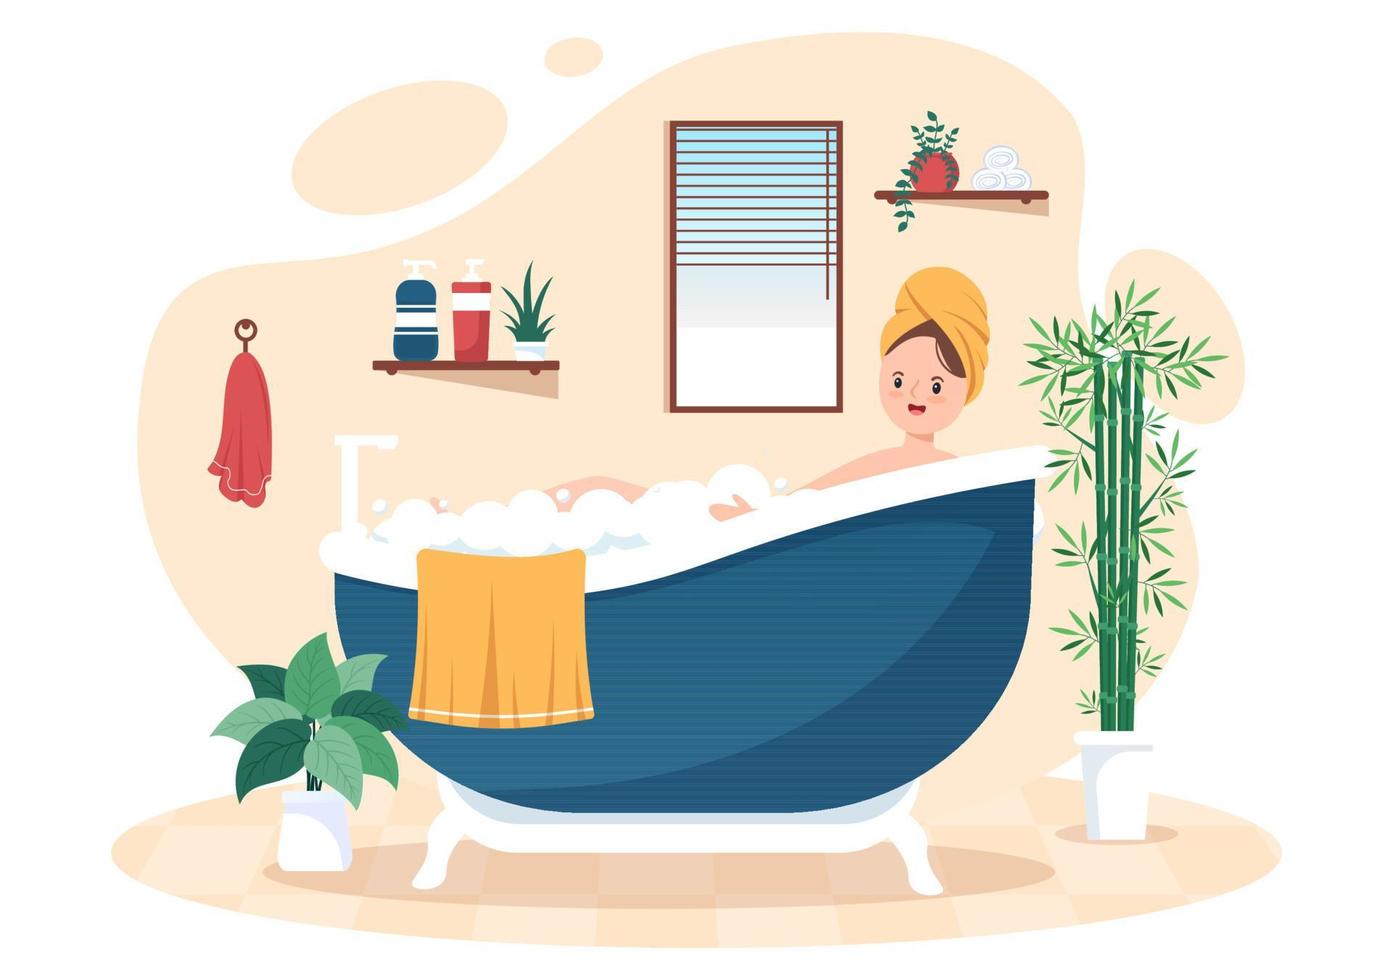 ilustración de fondo interior de muebles de baño modernos con una chica bañándose en la bañera en un estilo de color plano vector